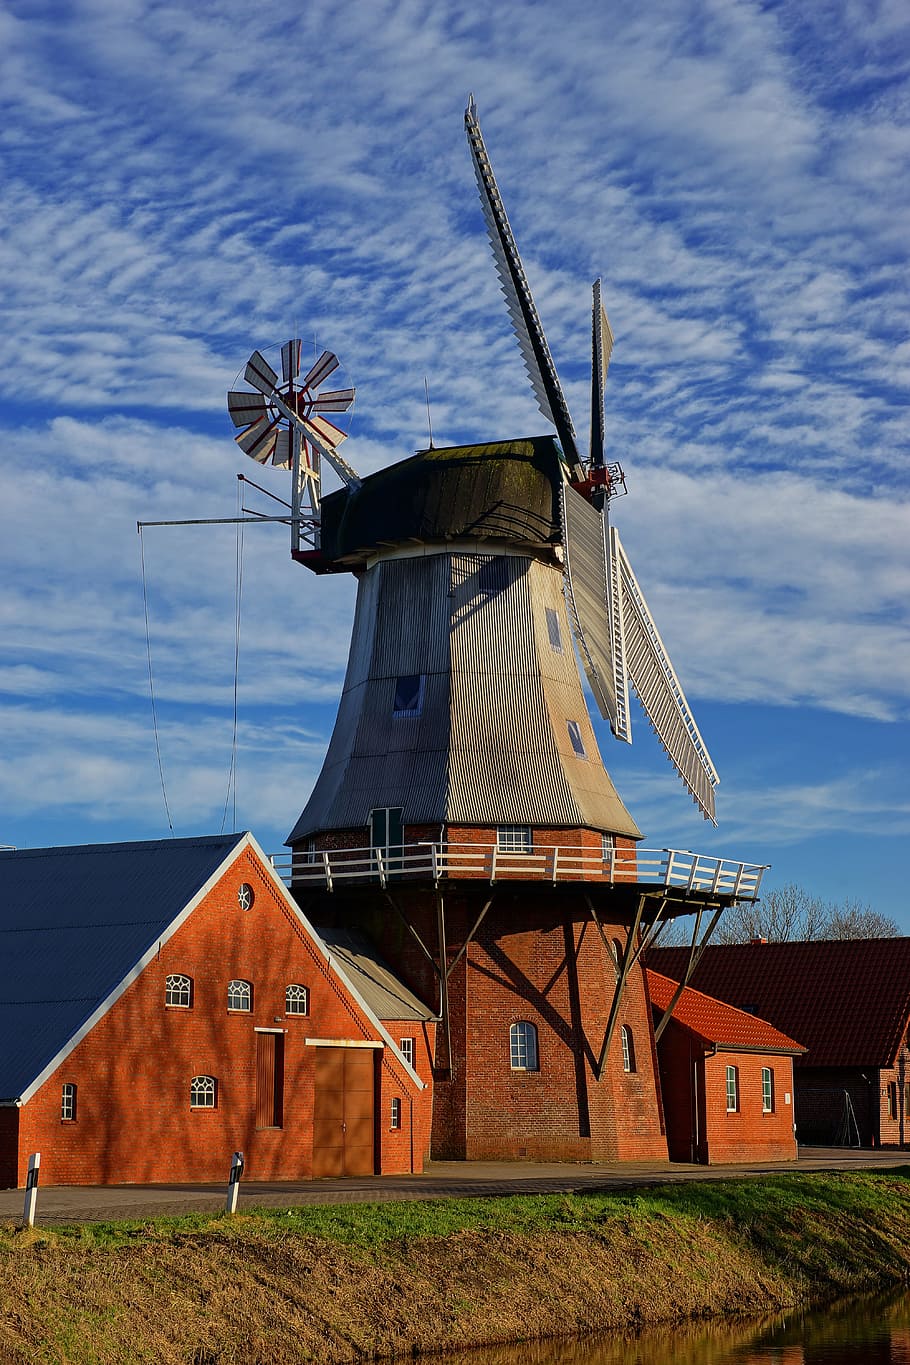 gris, molino de viento, al lado, marrón, casa, cielo, holandés, frisia oriental, moler grano, preservación histórica